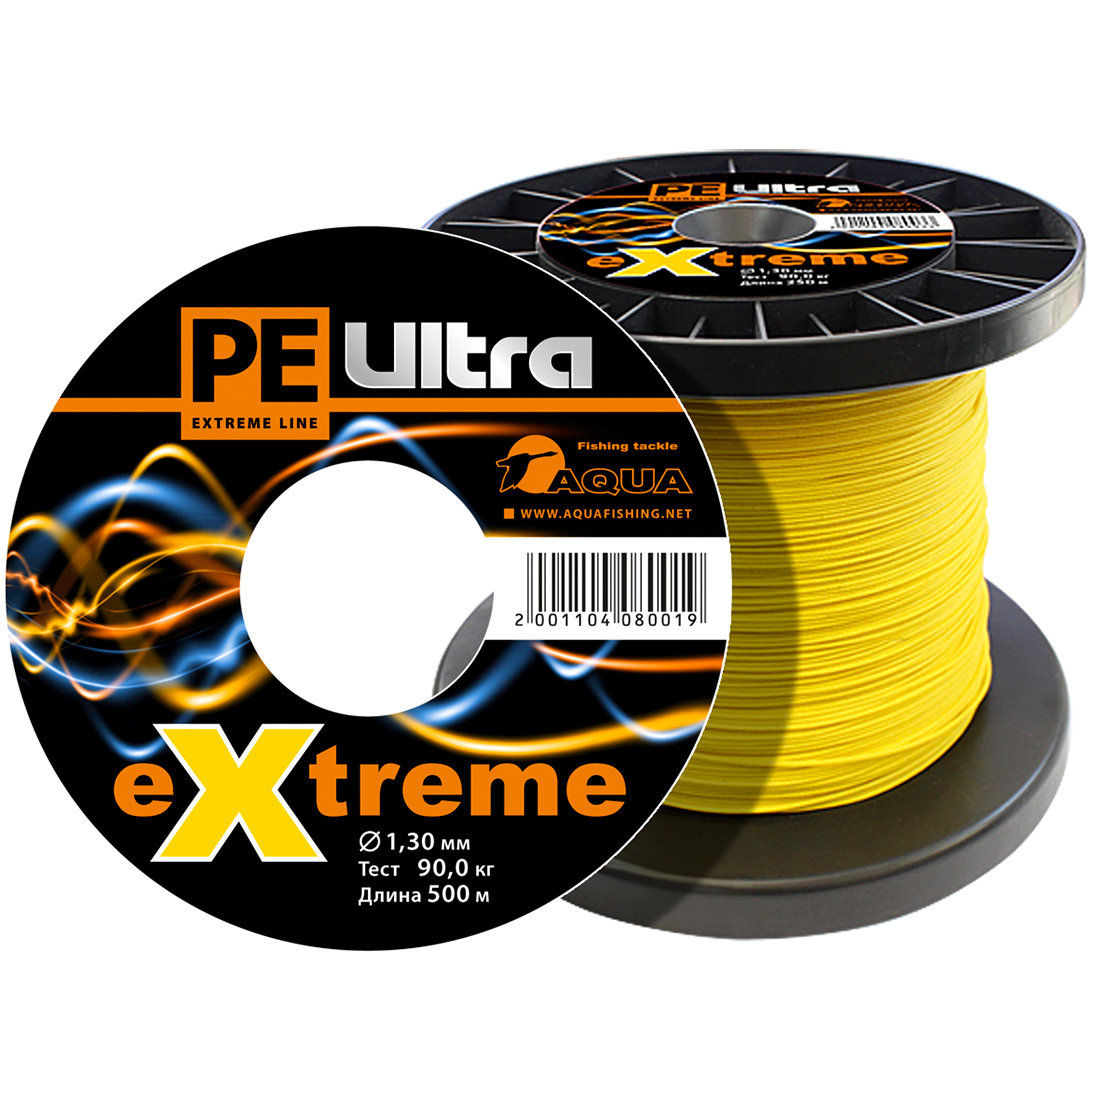 Плетеный Шнур Для Рыбалки Aqua Pe Ultra Extreme 1,30mm (Цвет Желтый) 500m